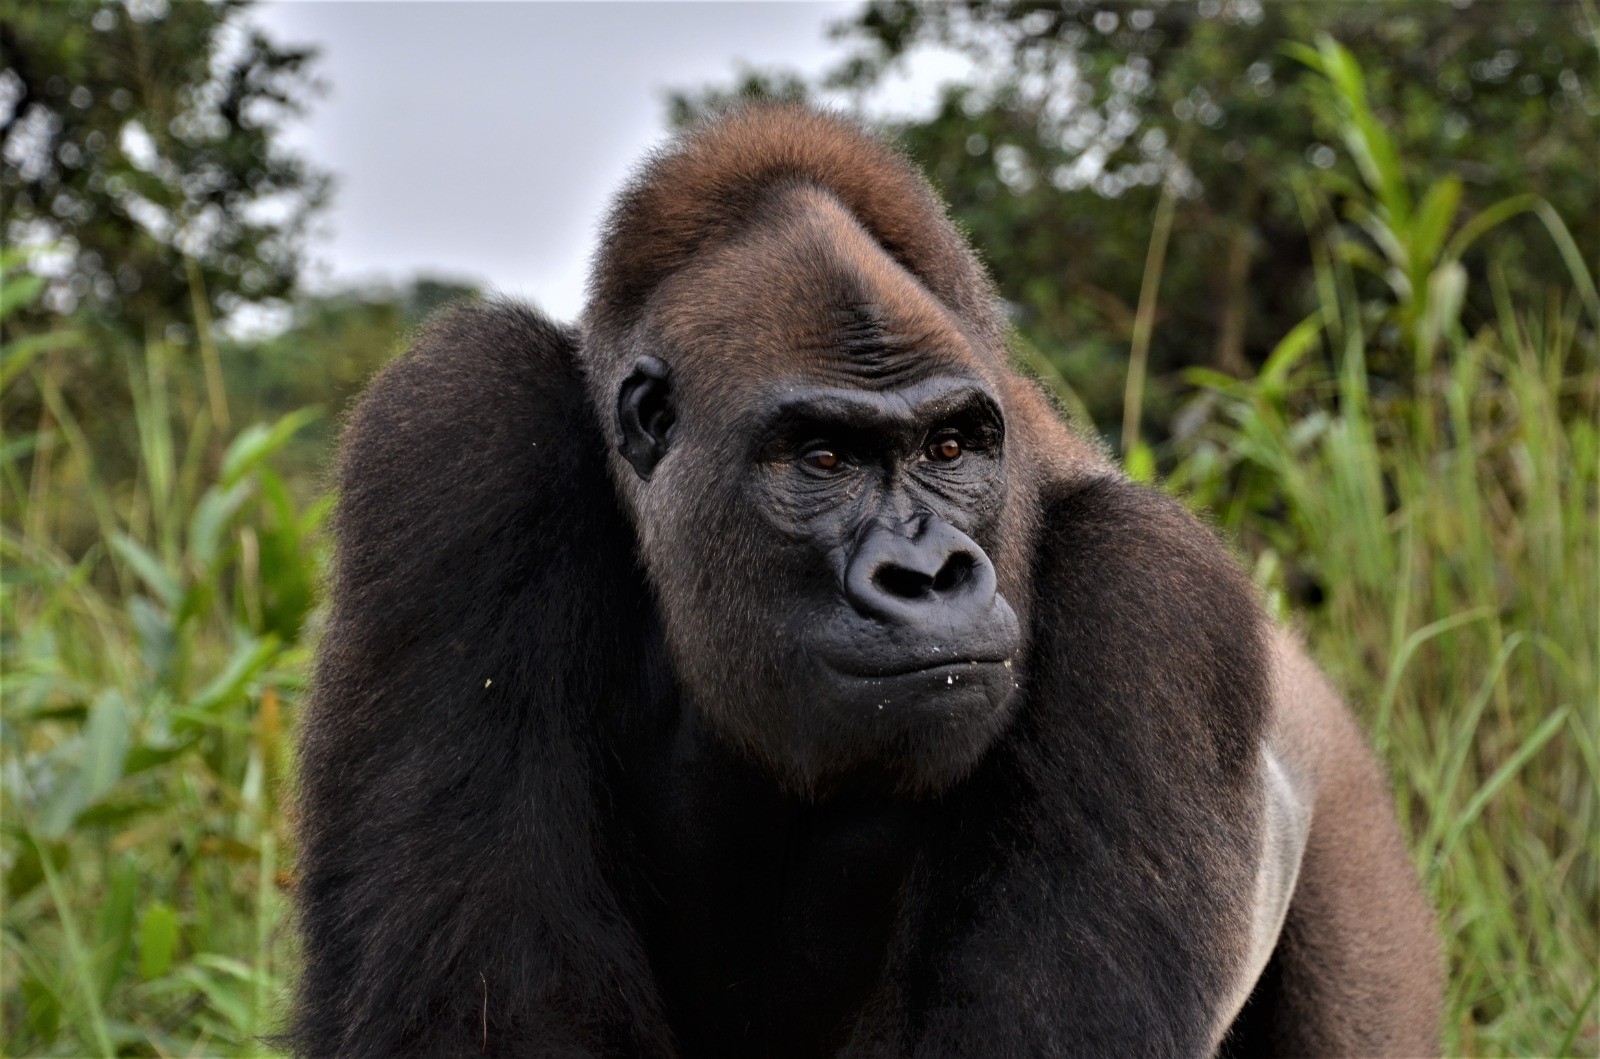 Cuidador del zoológico: características del gorila